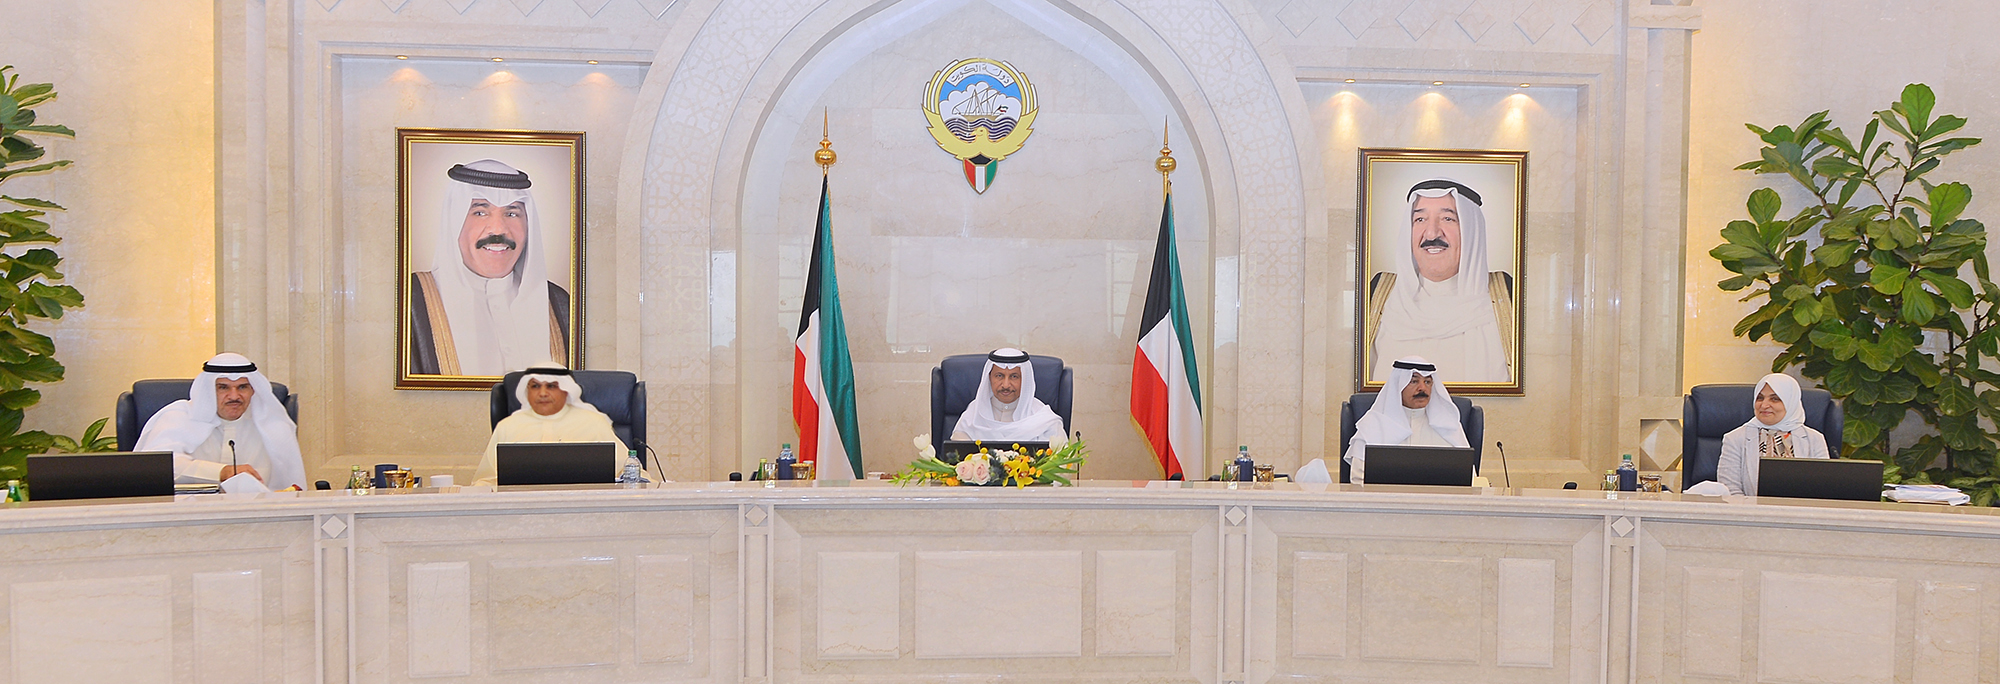 رئيس مجلس الوزراء سمو الشيخ جابر مبارك الحمد الصباح يترأس اجتماع مجلس الوزراء